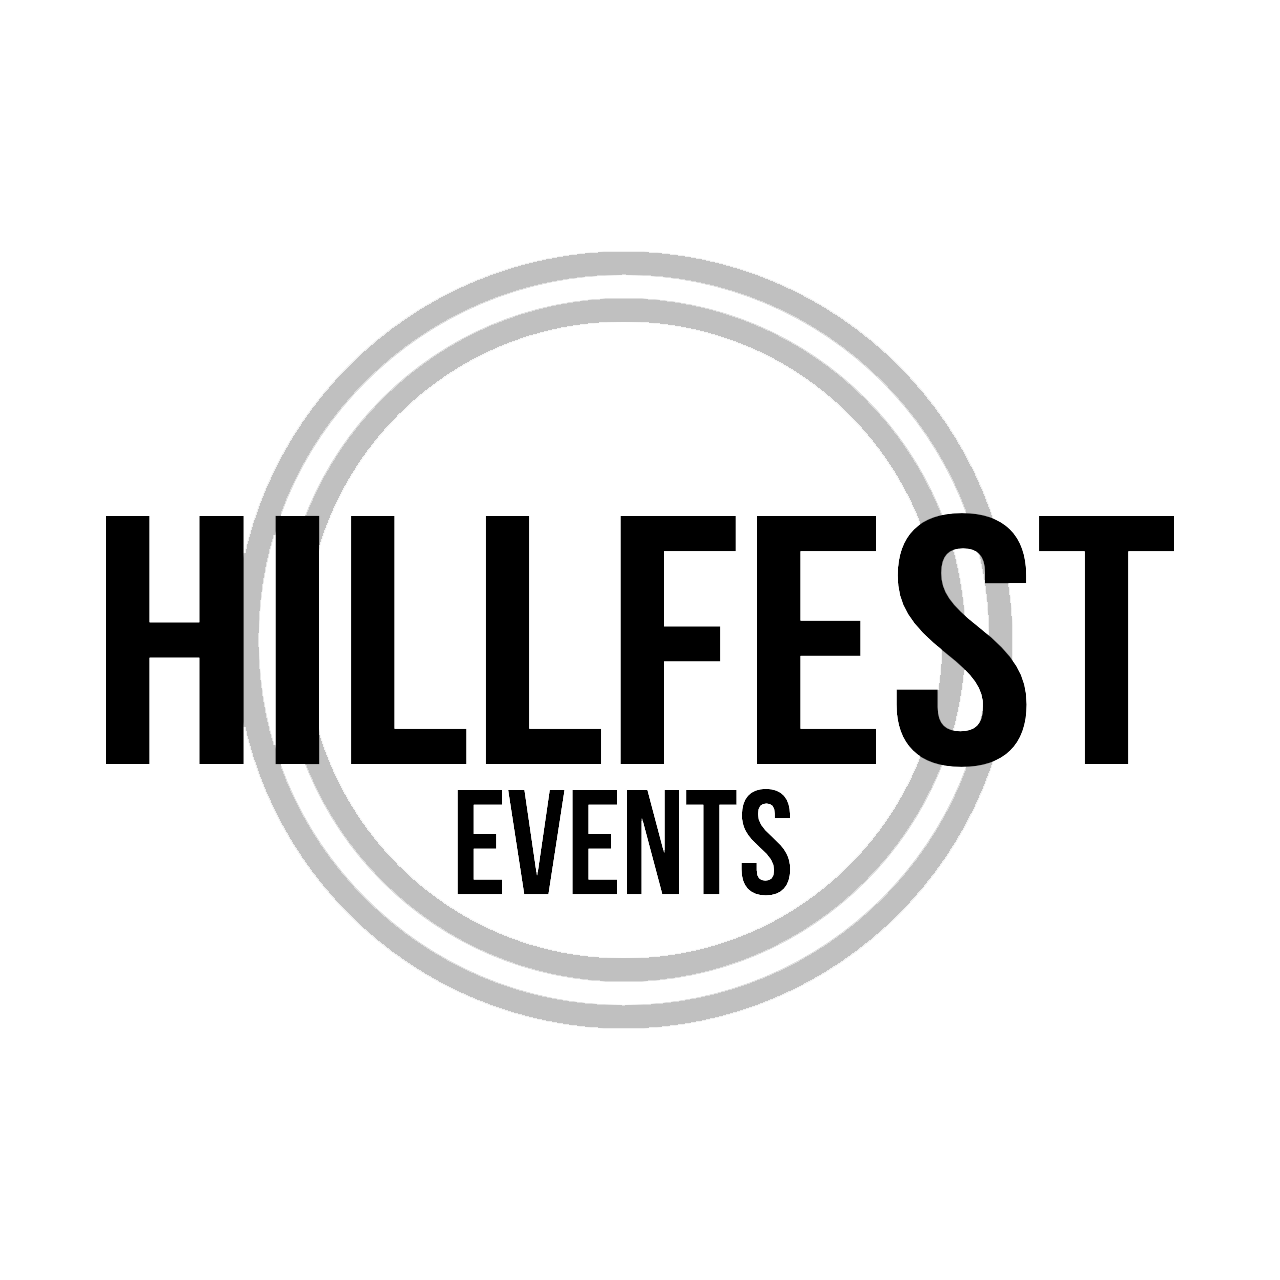 Hillfest logo